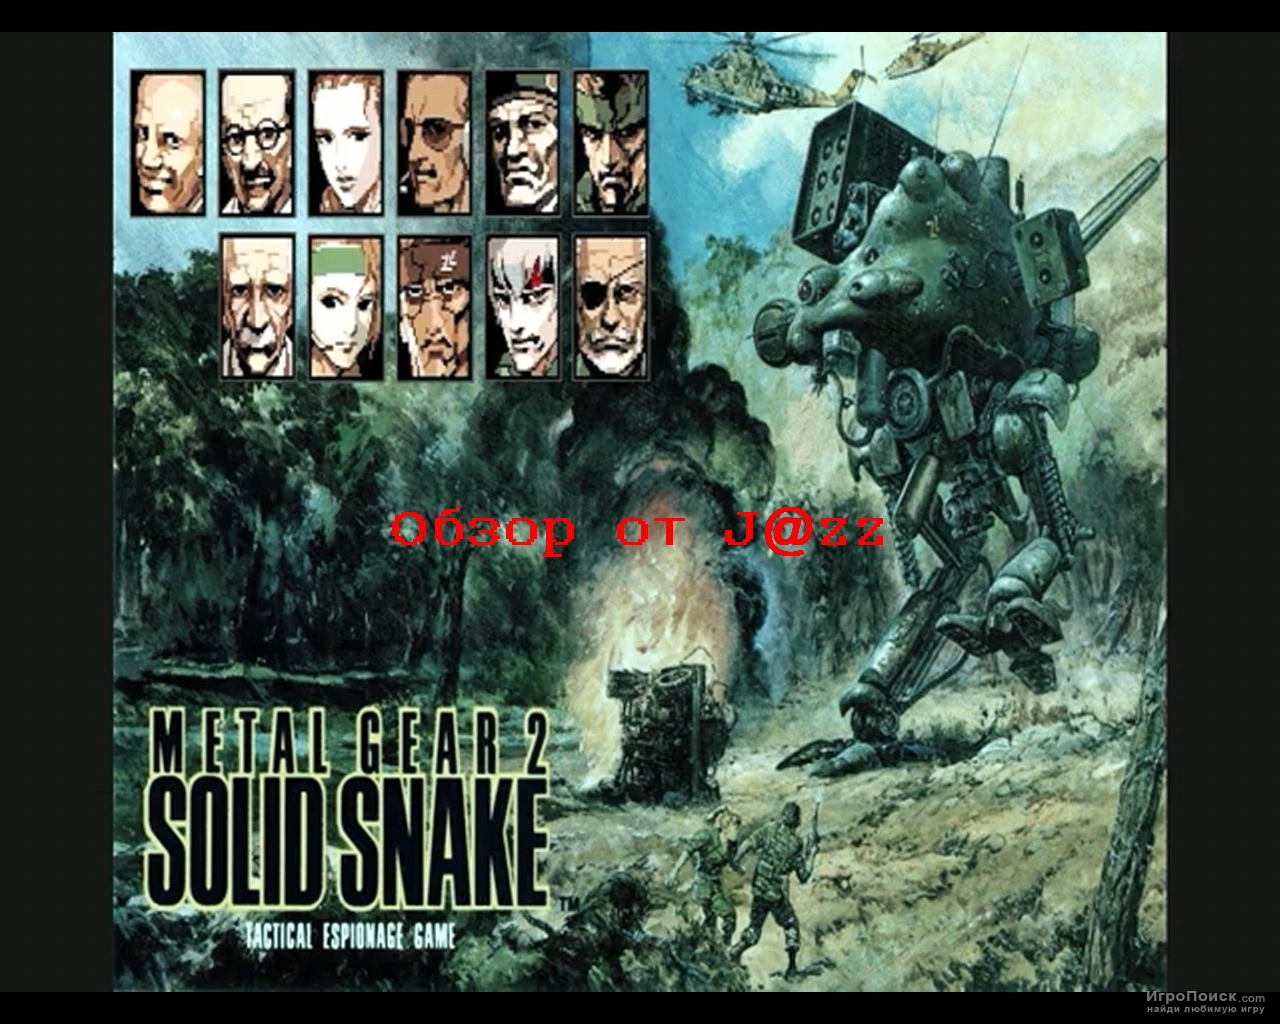 Solid Snake:  